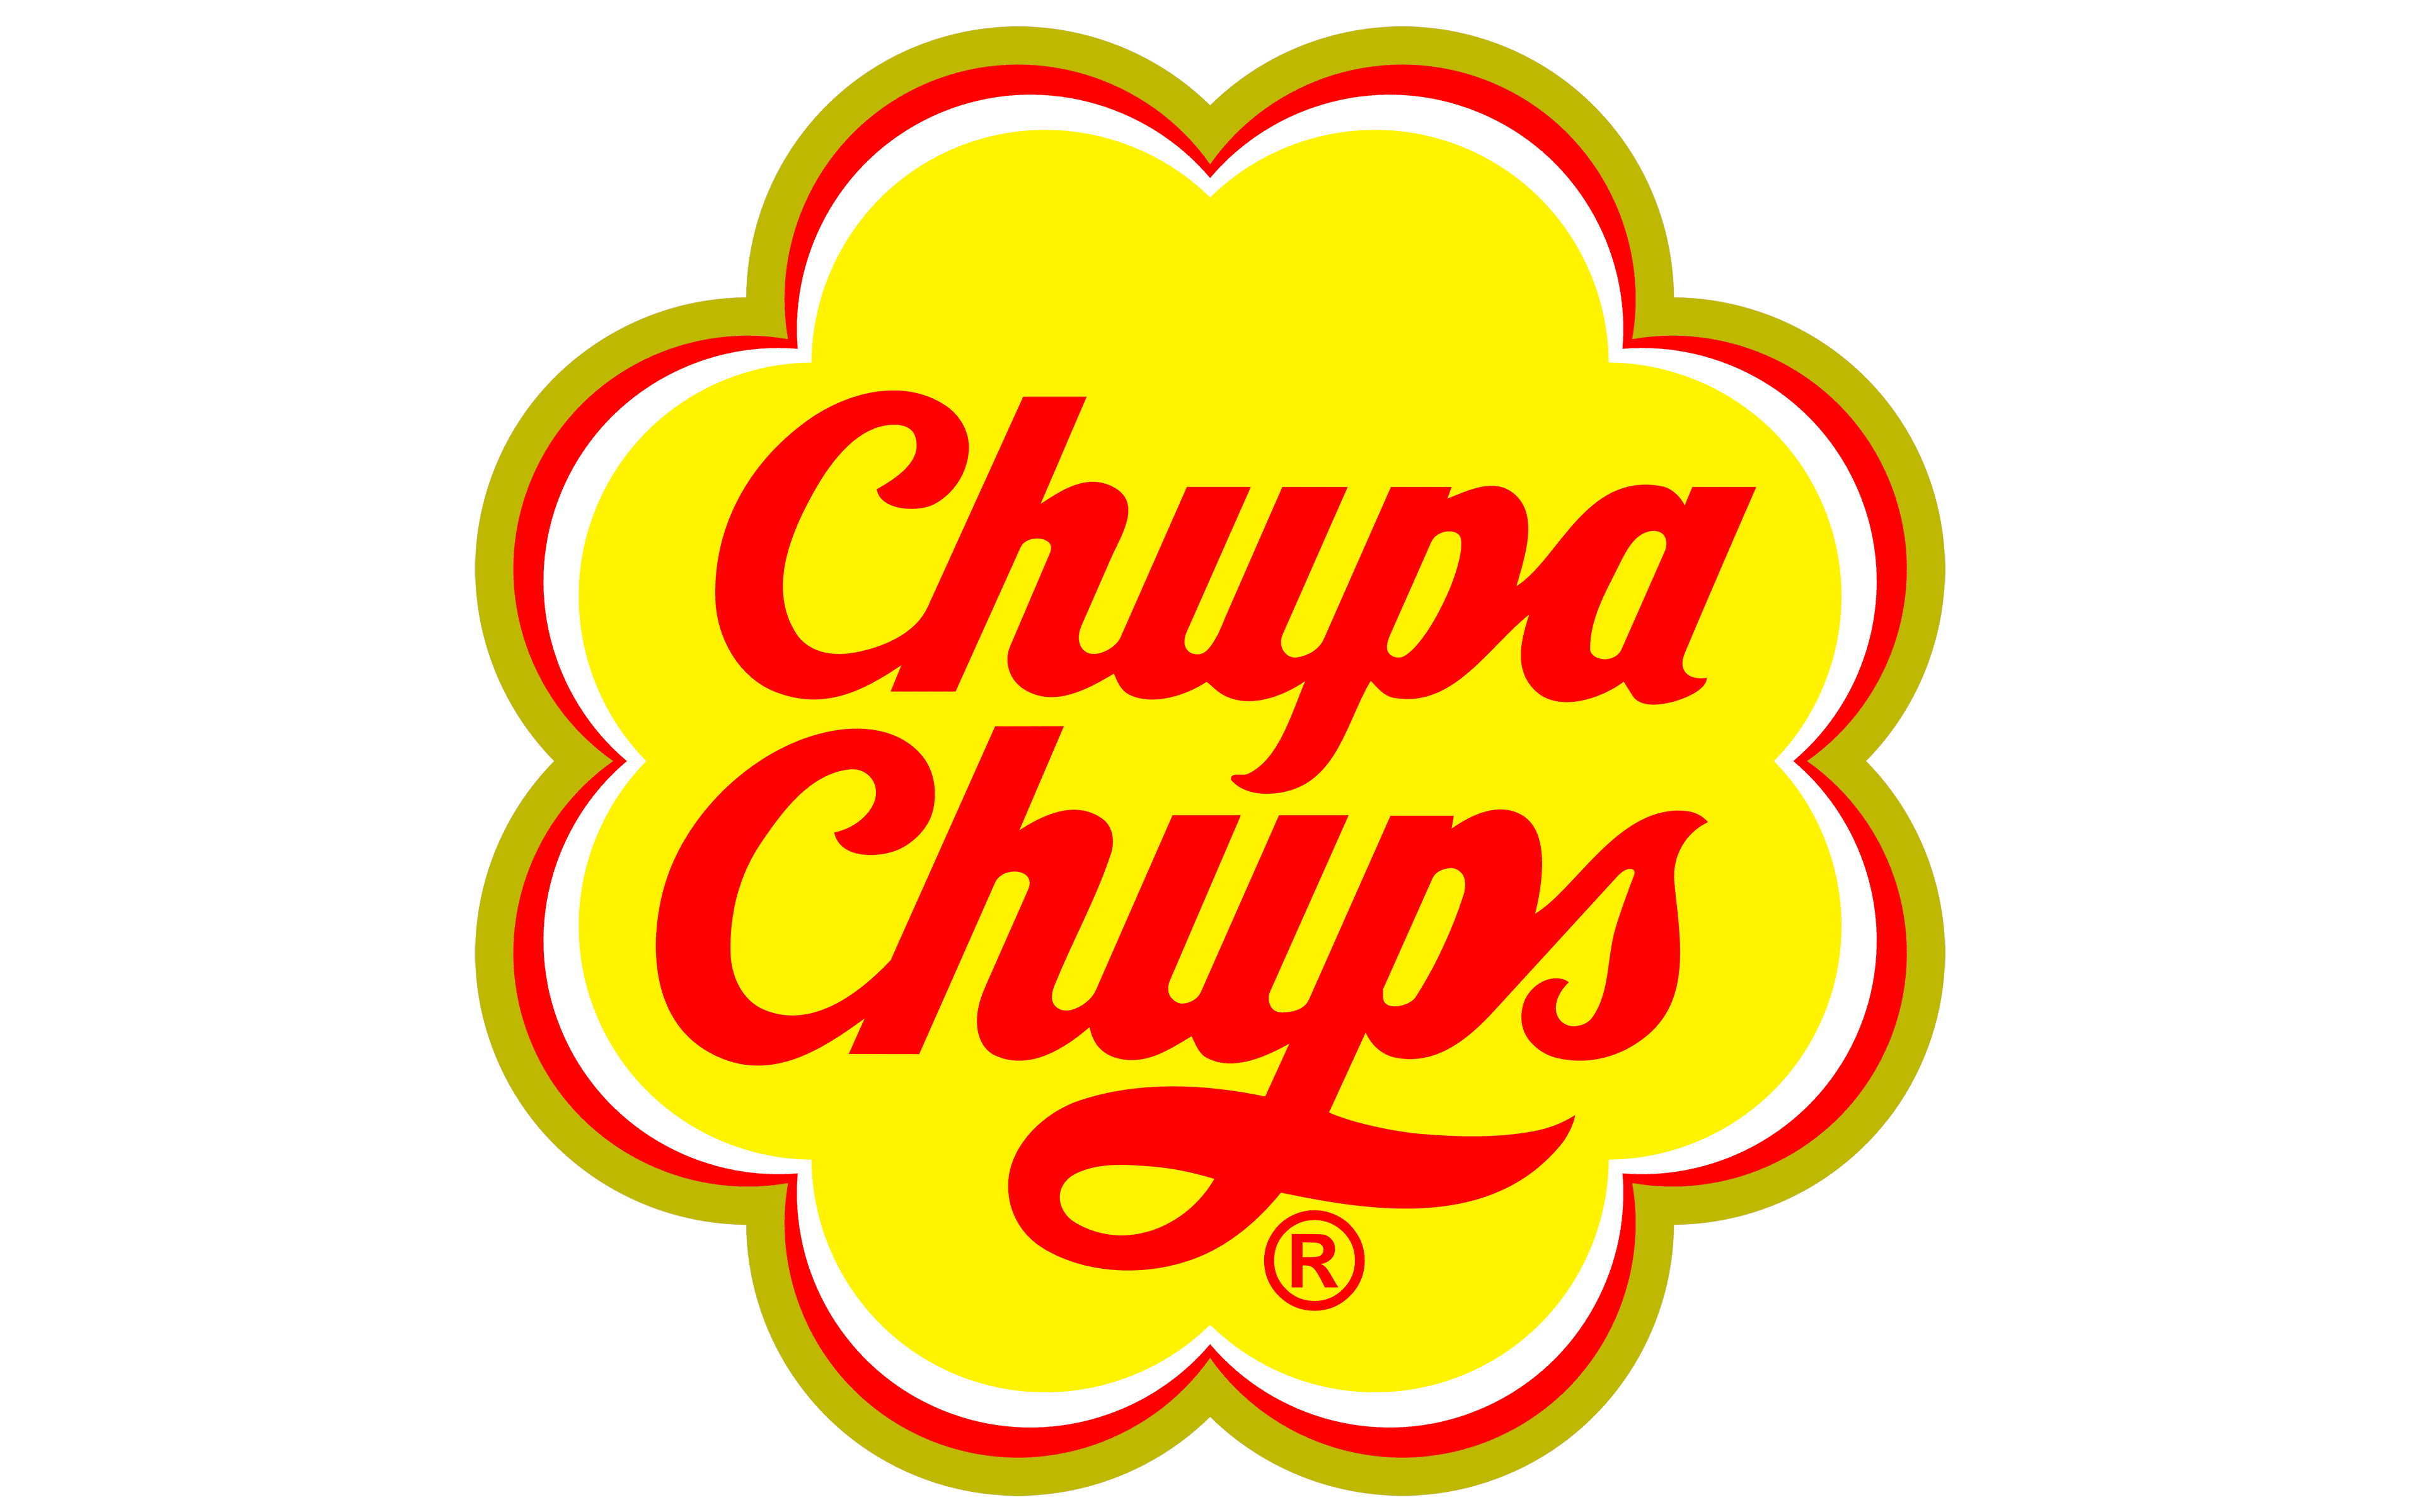 Chupa Chups logo and symbol, meaning, history, PNG